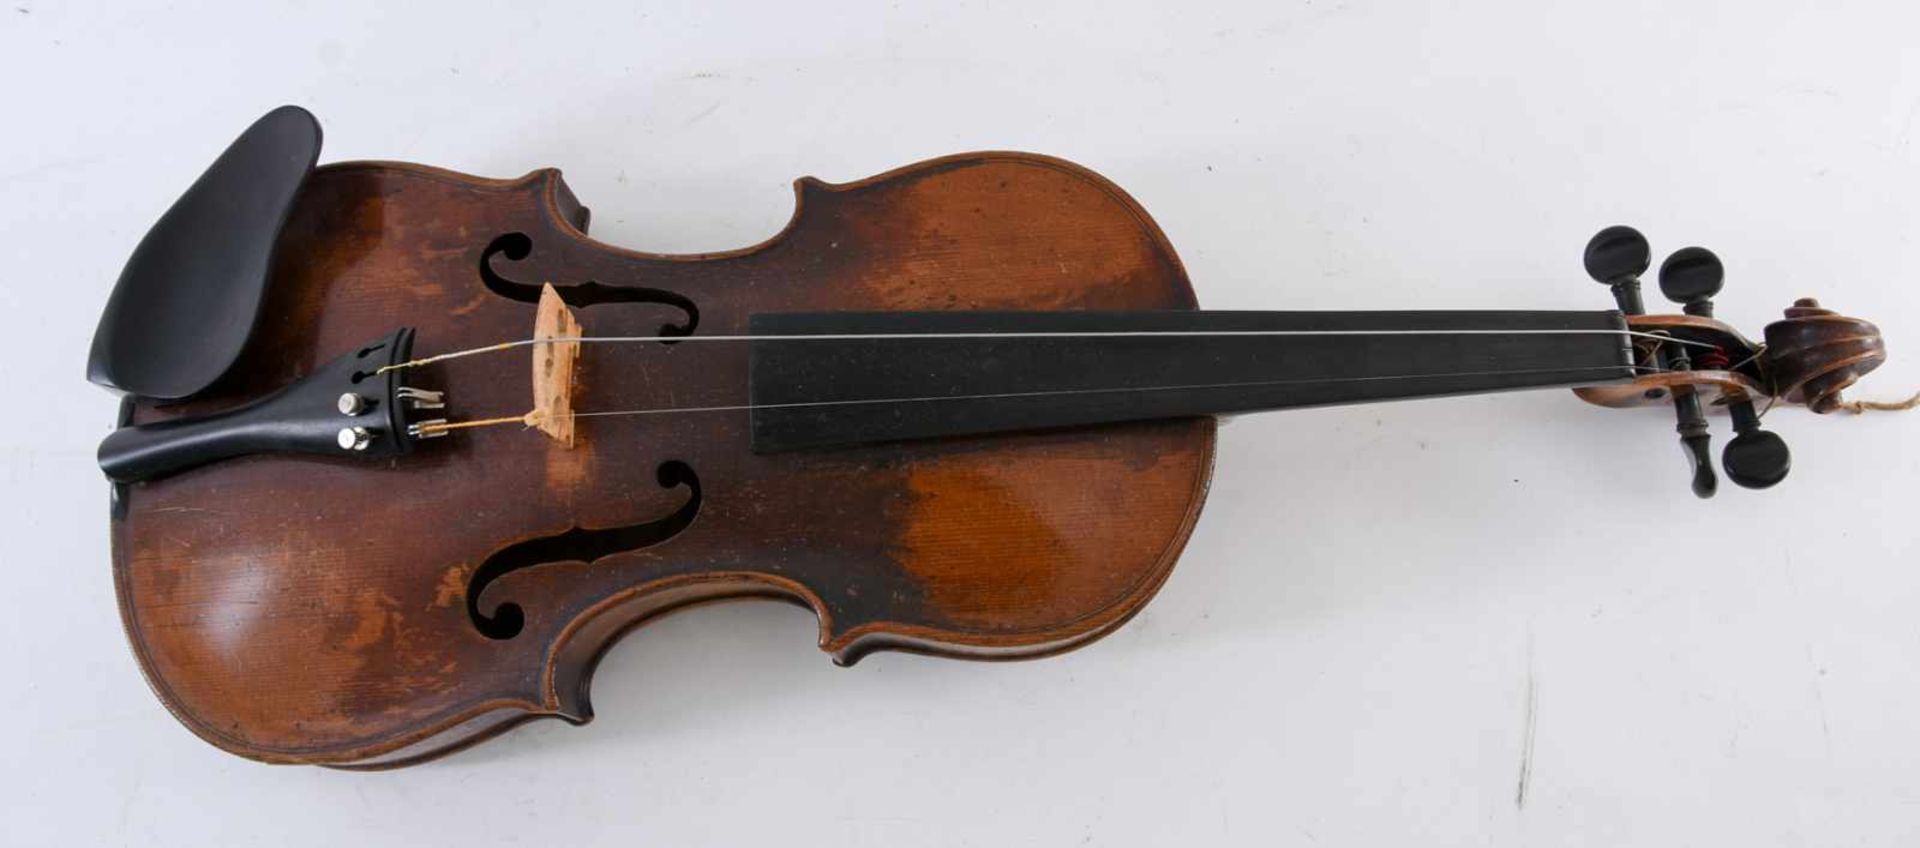 FRANCESCO RUGGERI. Nach. Geige mit Bogen und Kasten,Modell von 1676, um 1900 Wohl um 1900 - Bild 2 aus 9